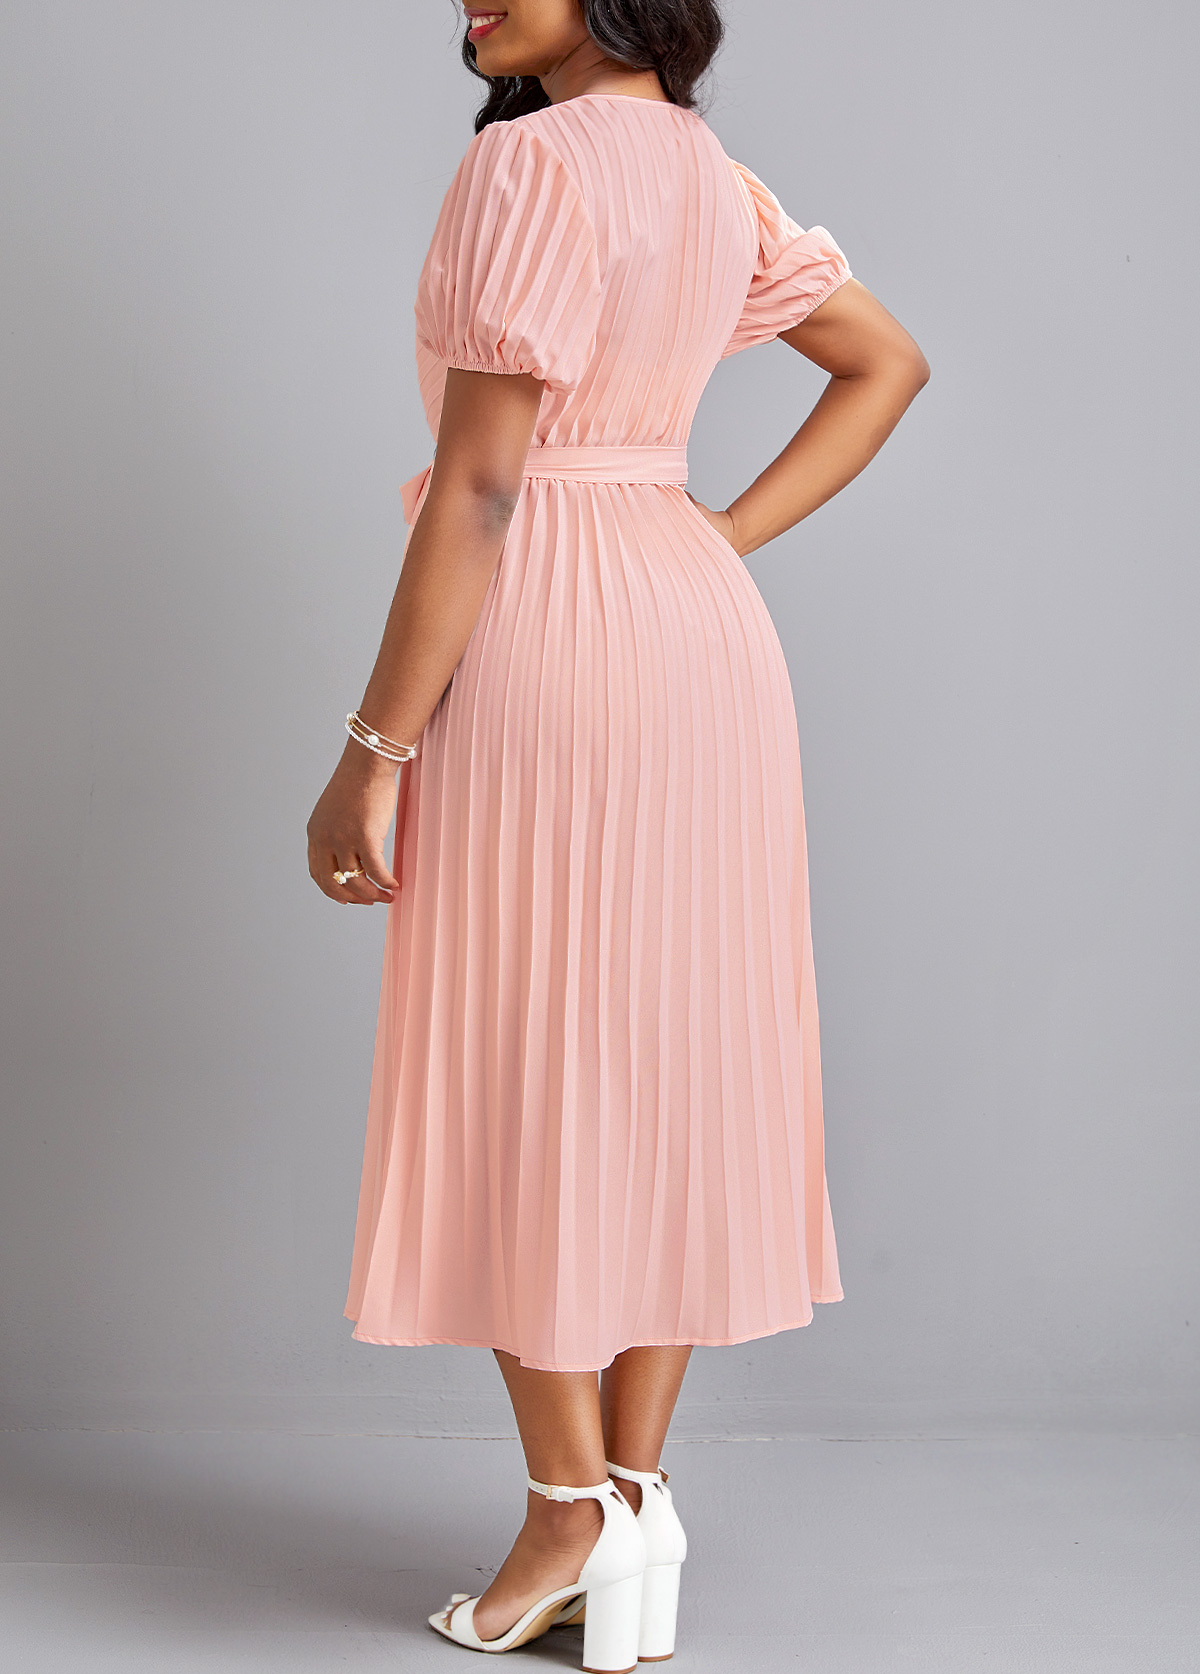 Pleated Belted Light Pink V Neck Dress